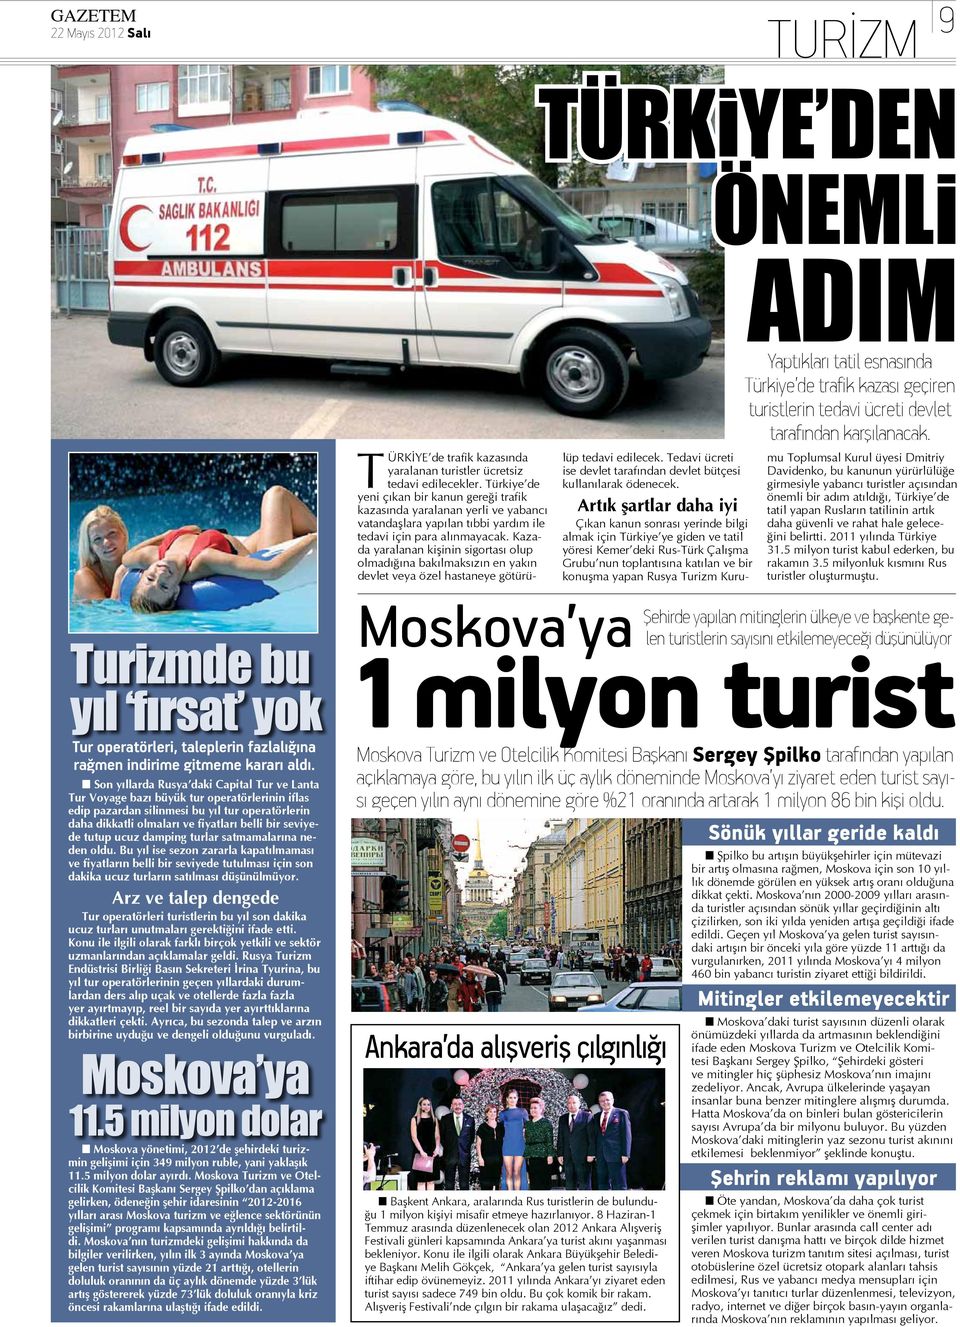 Türkiye de yeni çıkan bir kanun gereği trafik kazasında yaralanan yerli ve yabancı vatandaşlara yapılan tıbbi yardım ile tedavi için para alınmayacak.